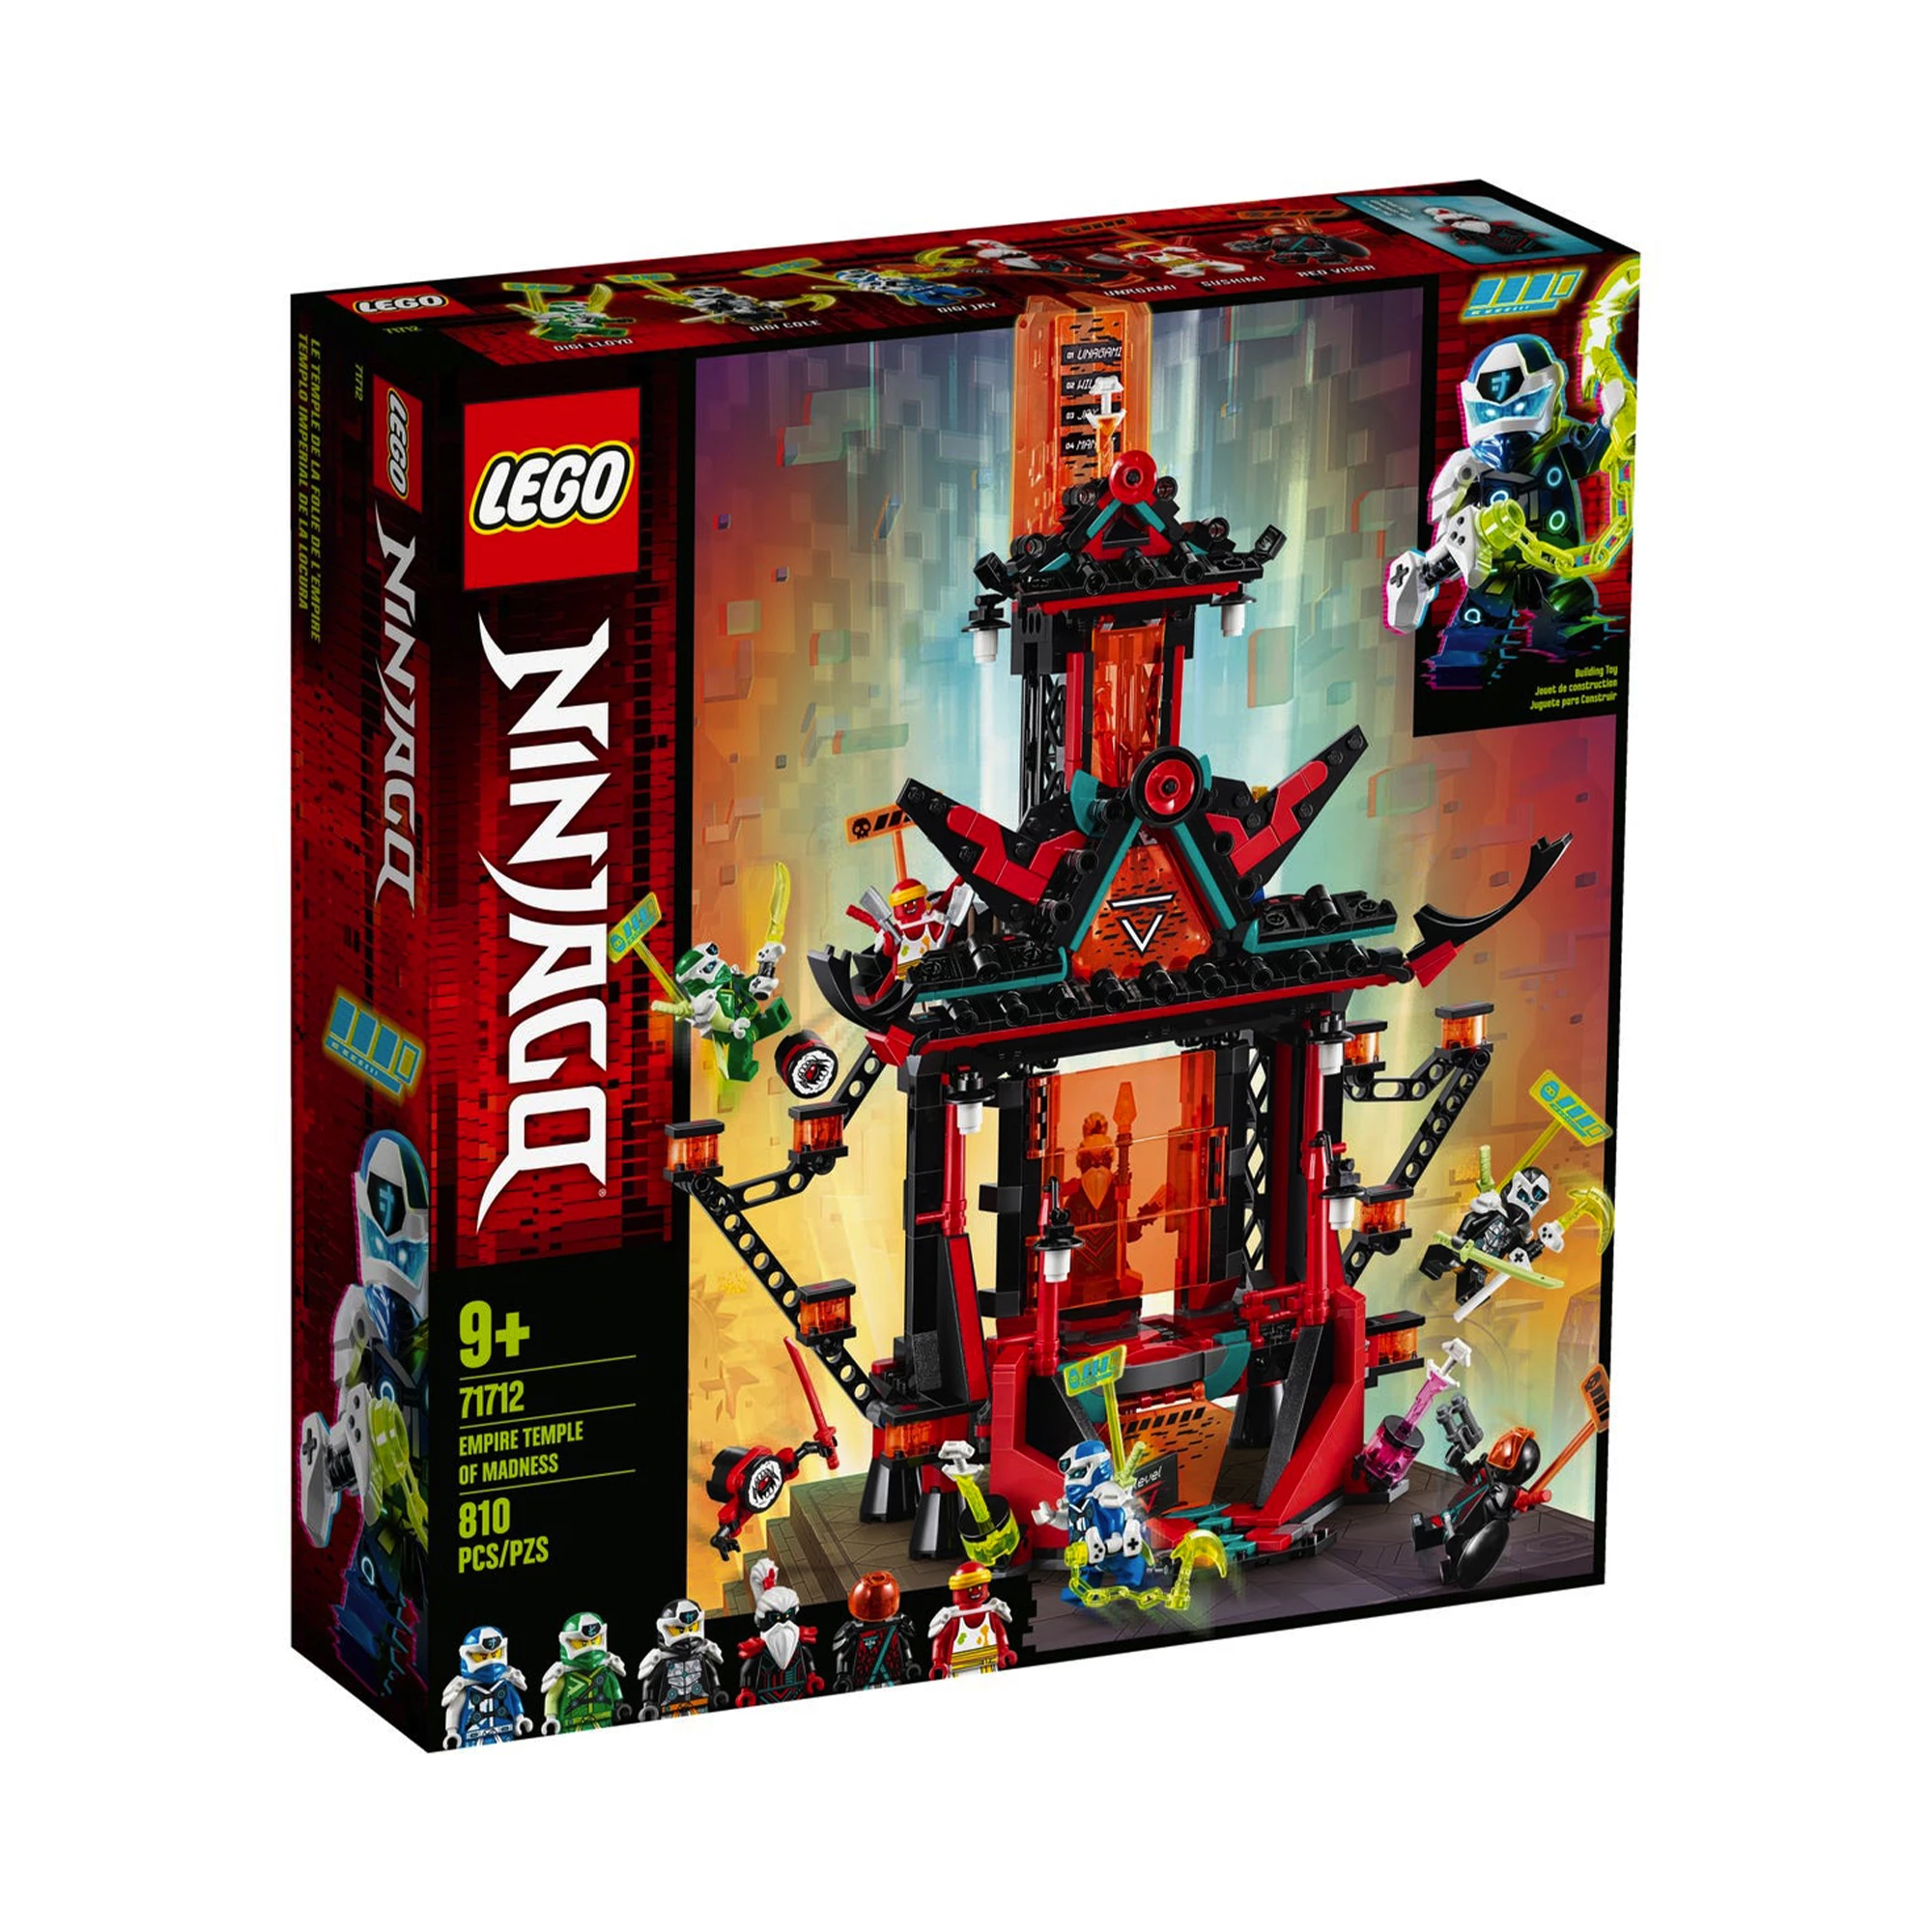 Блочный конструктор LEGO NINJAGO Императорский храм Безумия (71712)